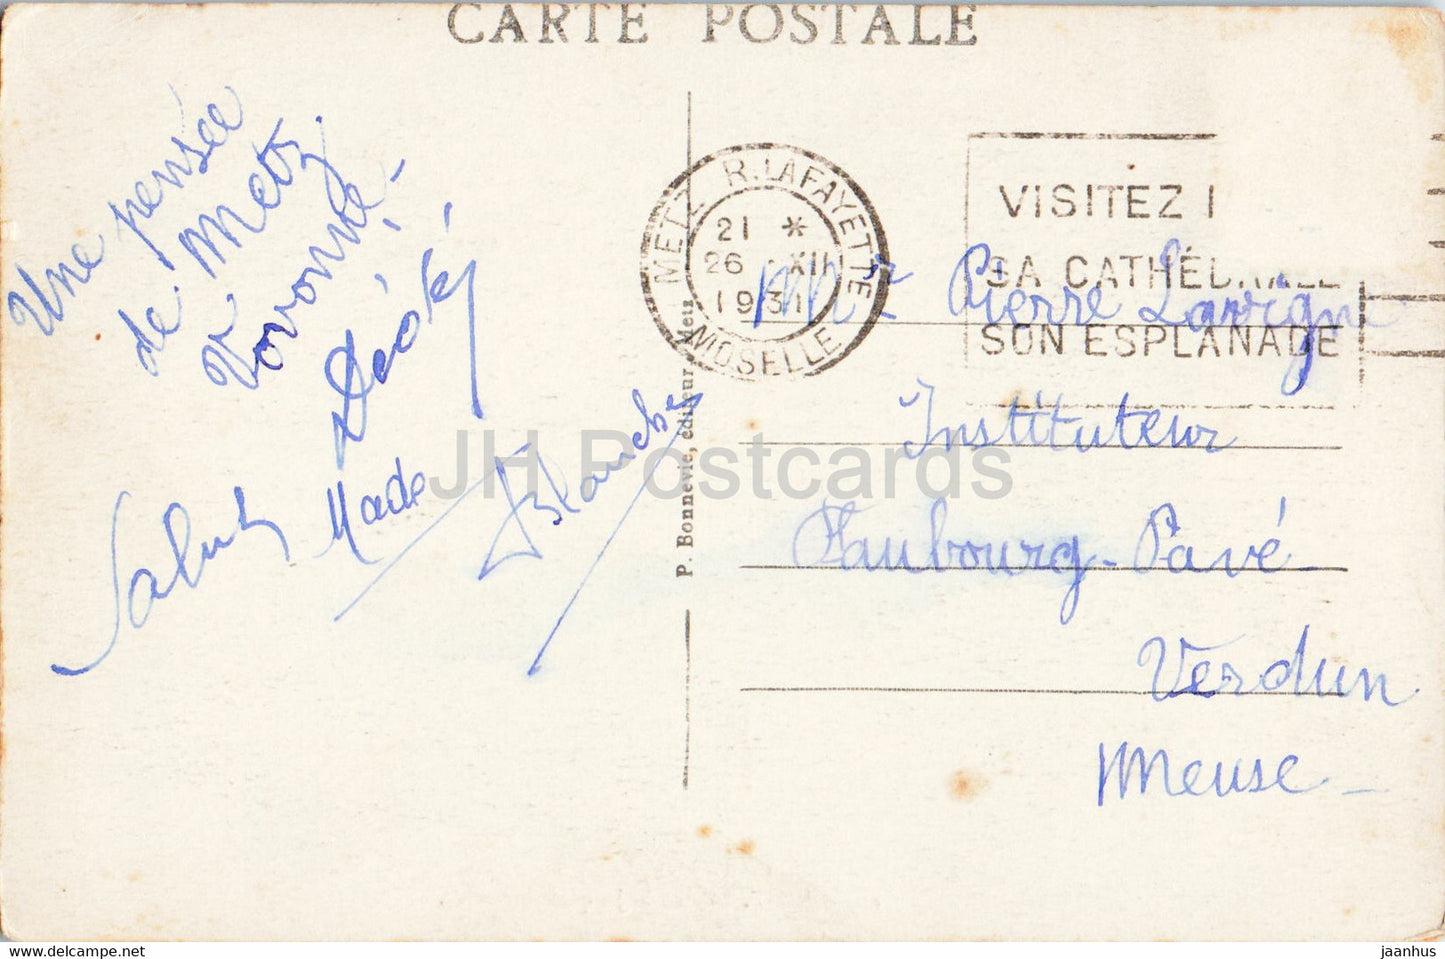 Metz - Place St Jacques - altes Auto - 225 - alte Postkarte - 1931 - Frankreich - gebraucht